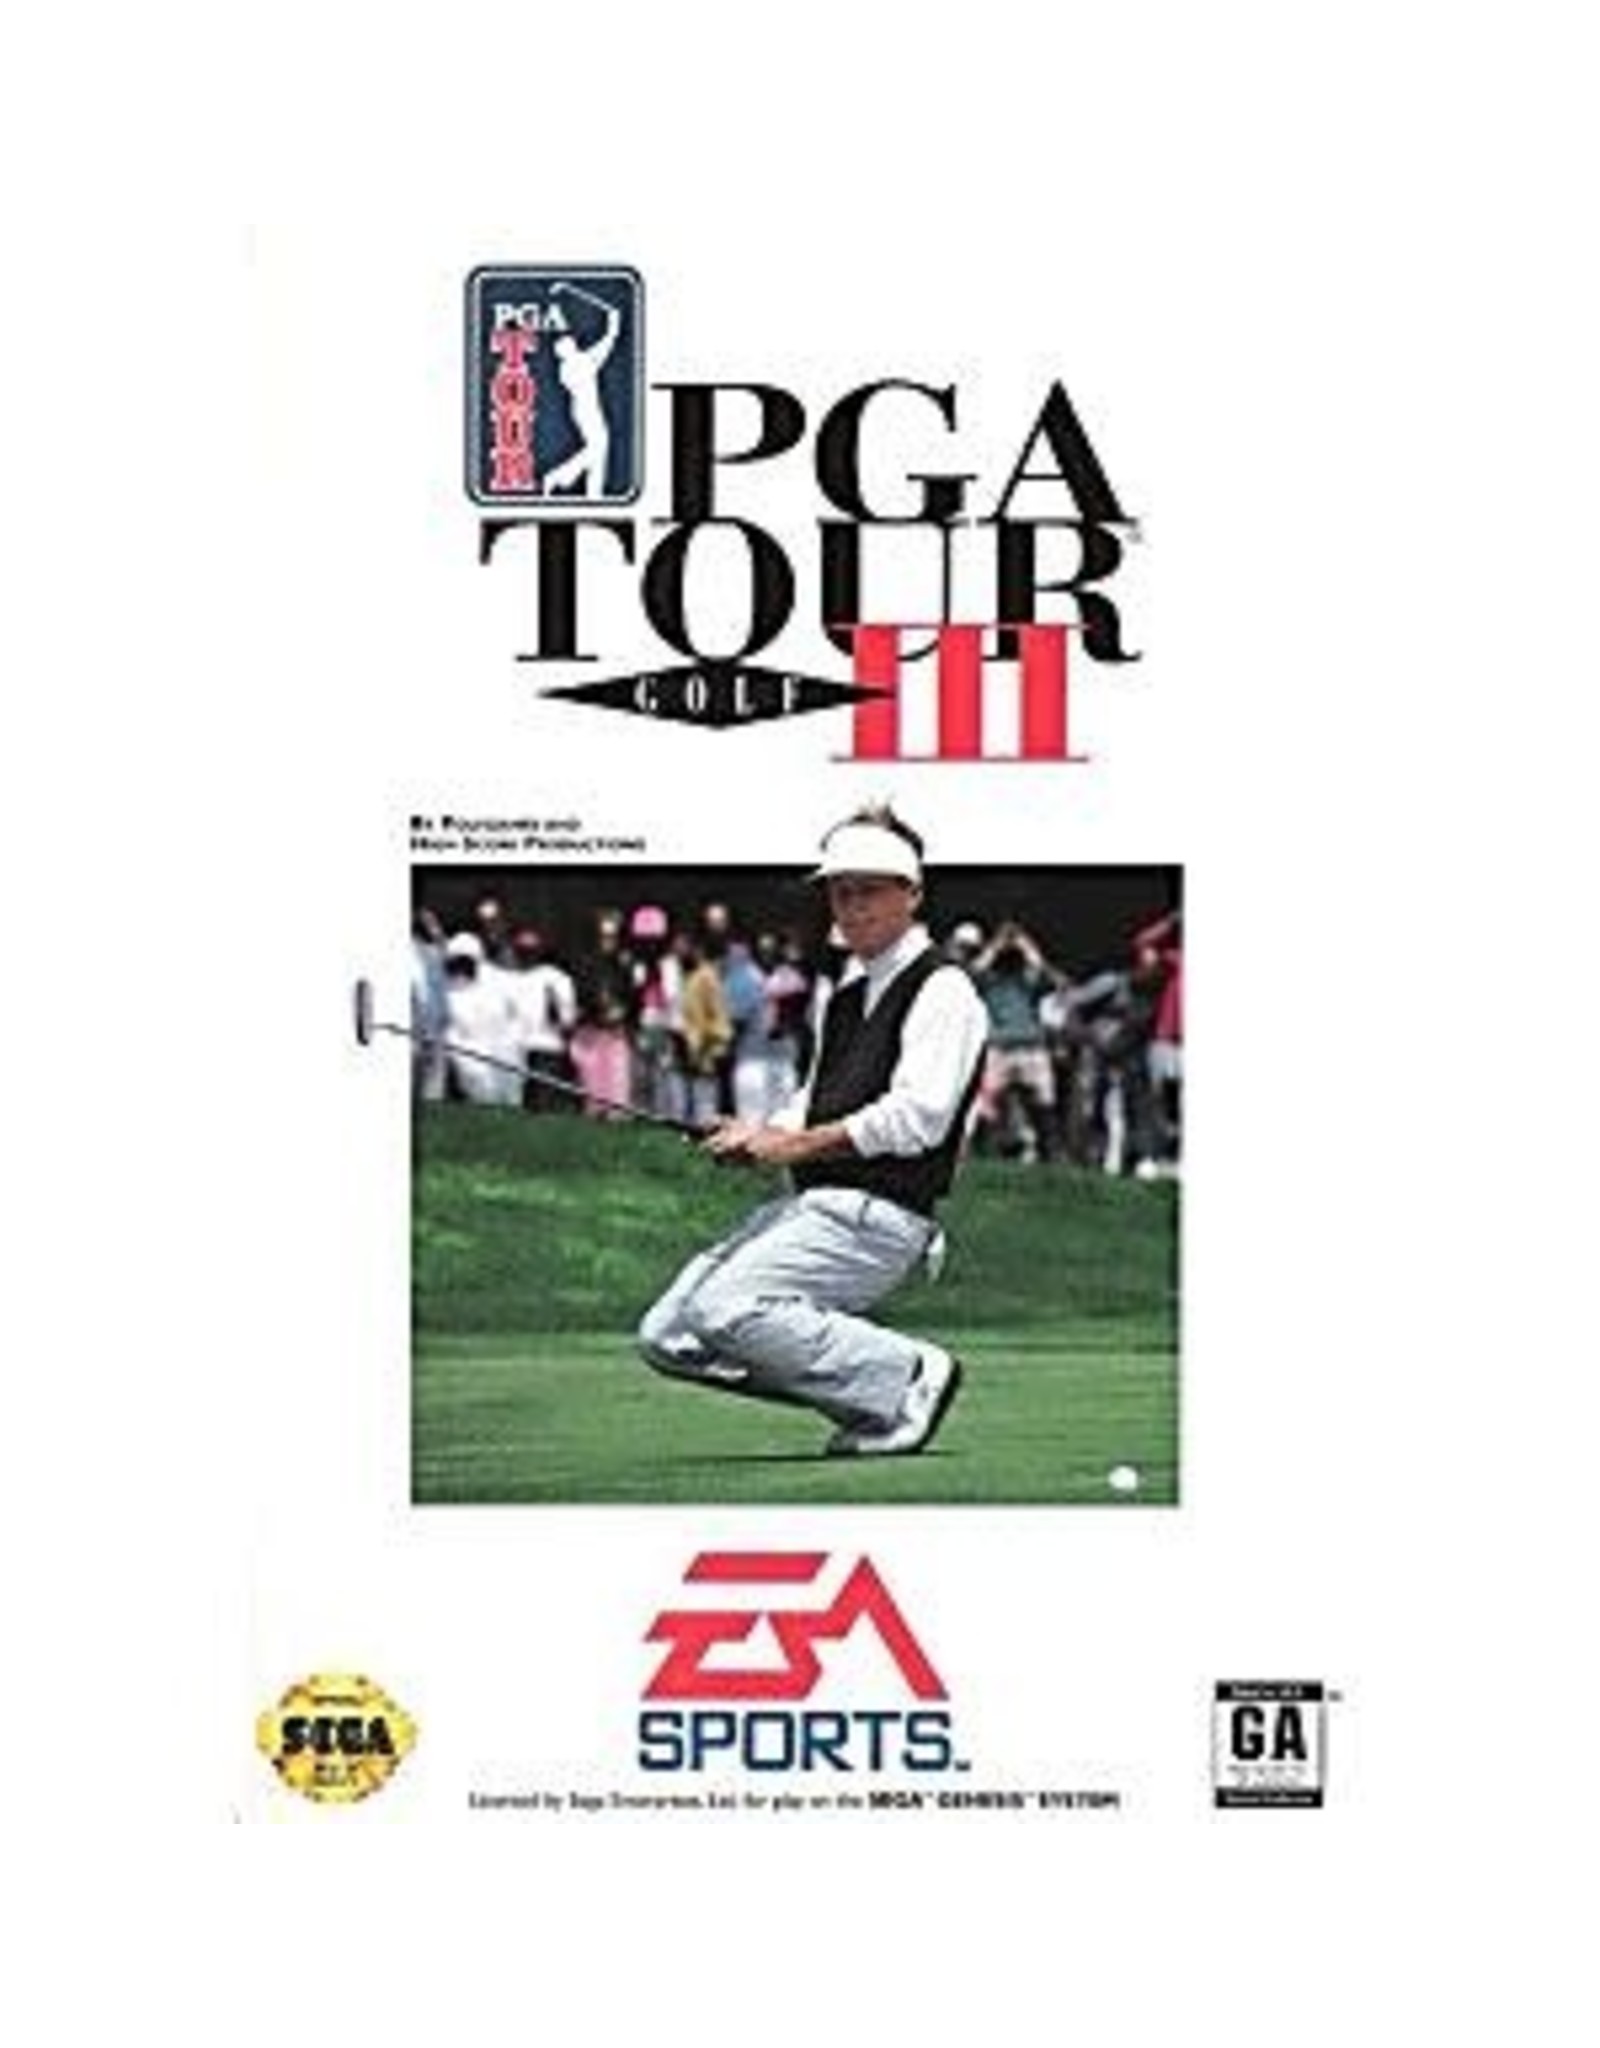 Sega Genesis PGA Tour Golf III (Boxed, No Manual)